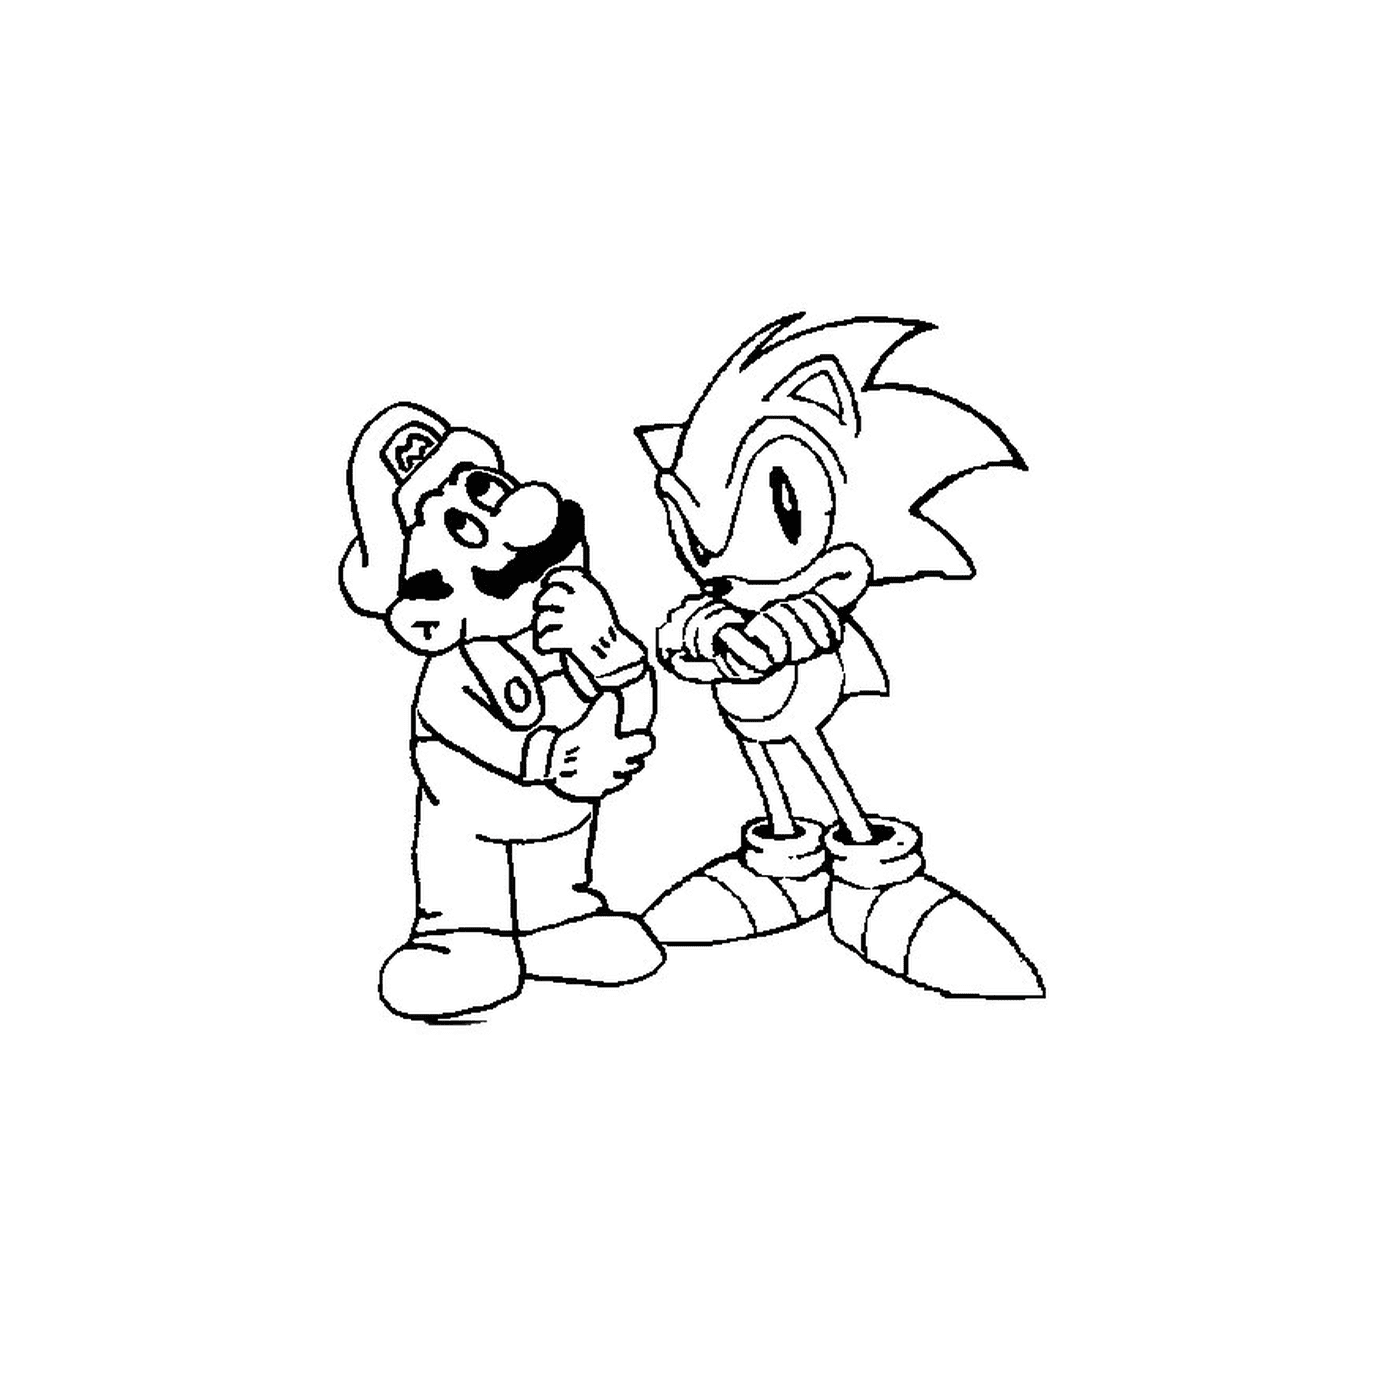  Mario und Sonic zusammen 